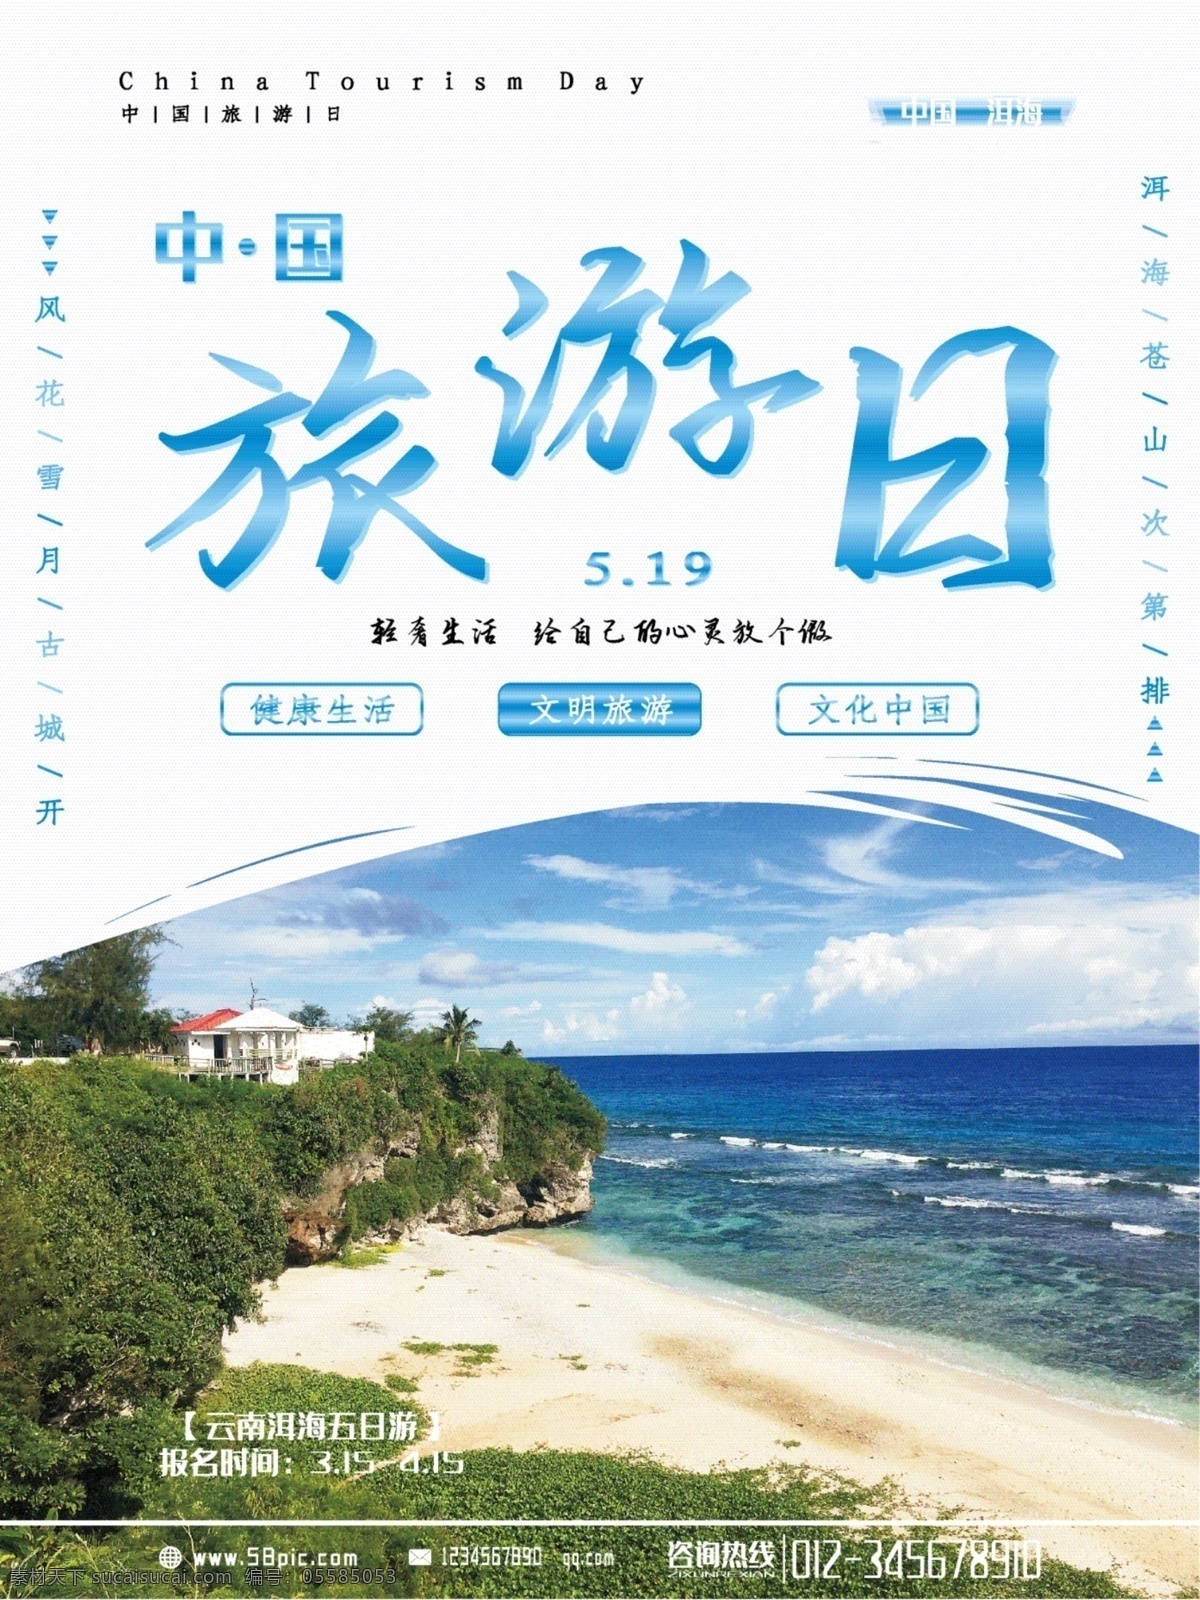 中国旅游 大型 室内外 节日 宣传海报 旅行 旅游 中国旅游日 节日海报 风景 洱海 旅游日 山水 海报 室内外海报